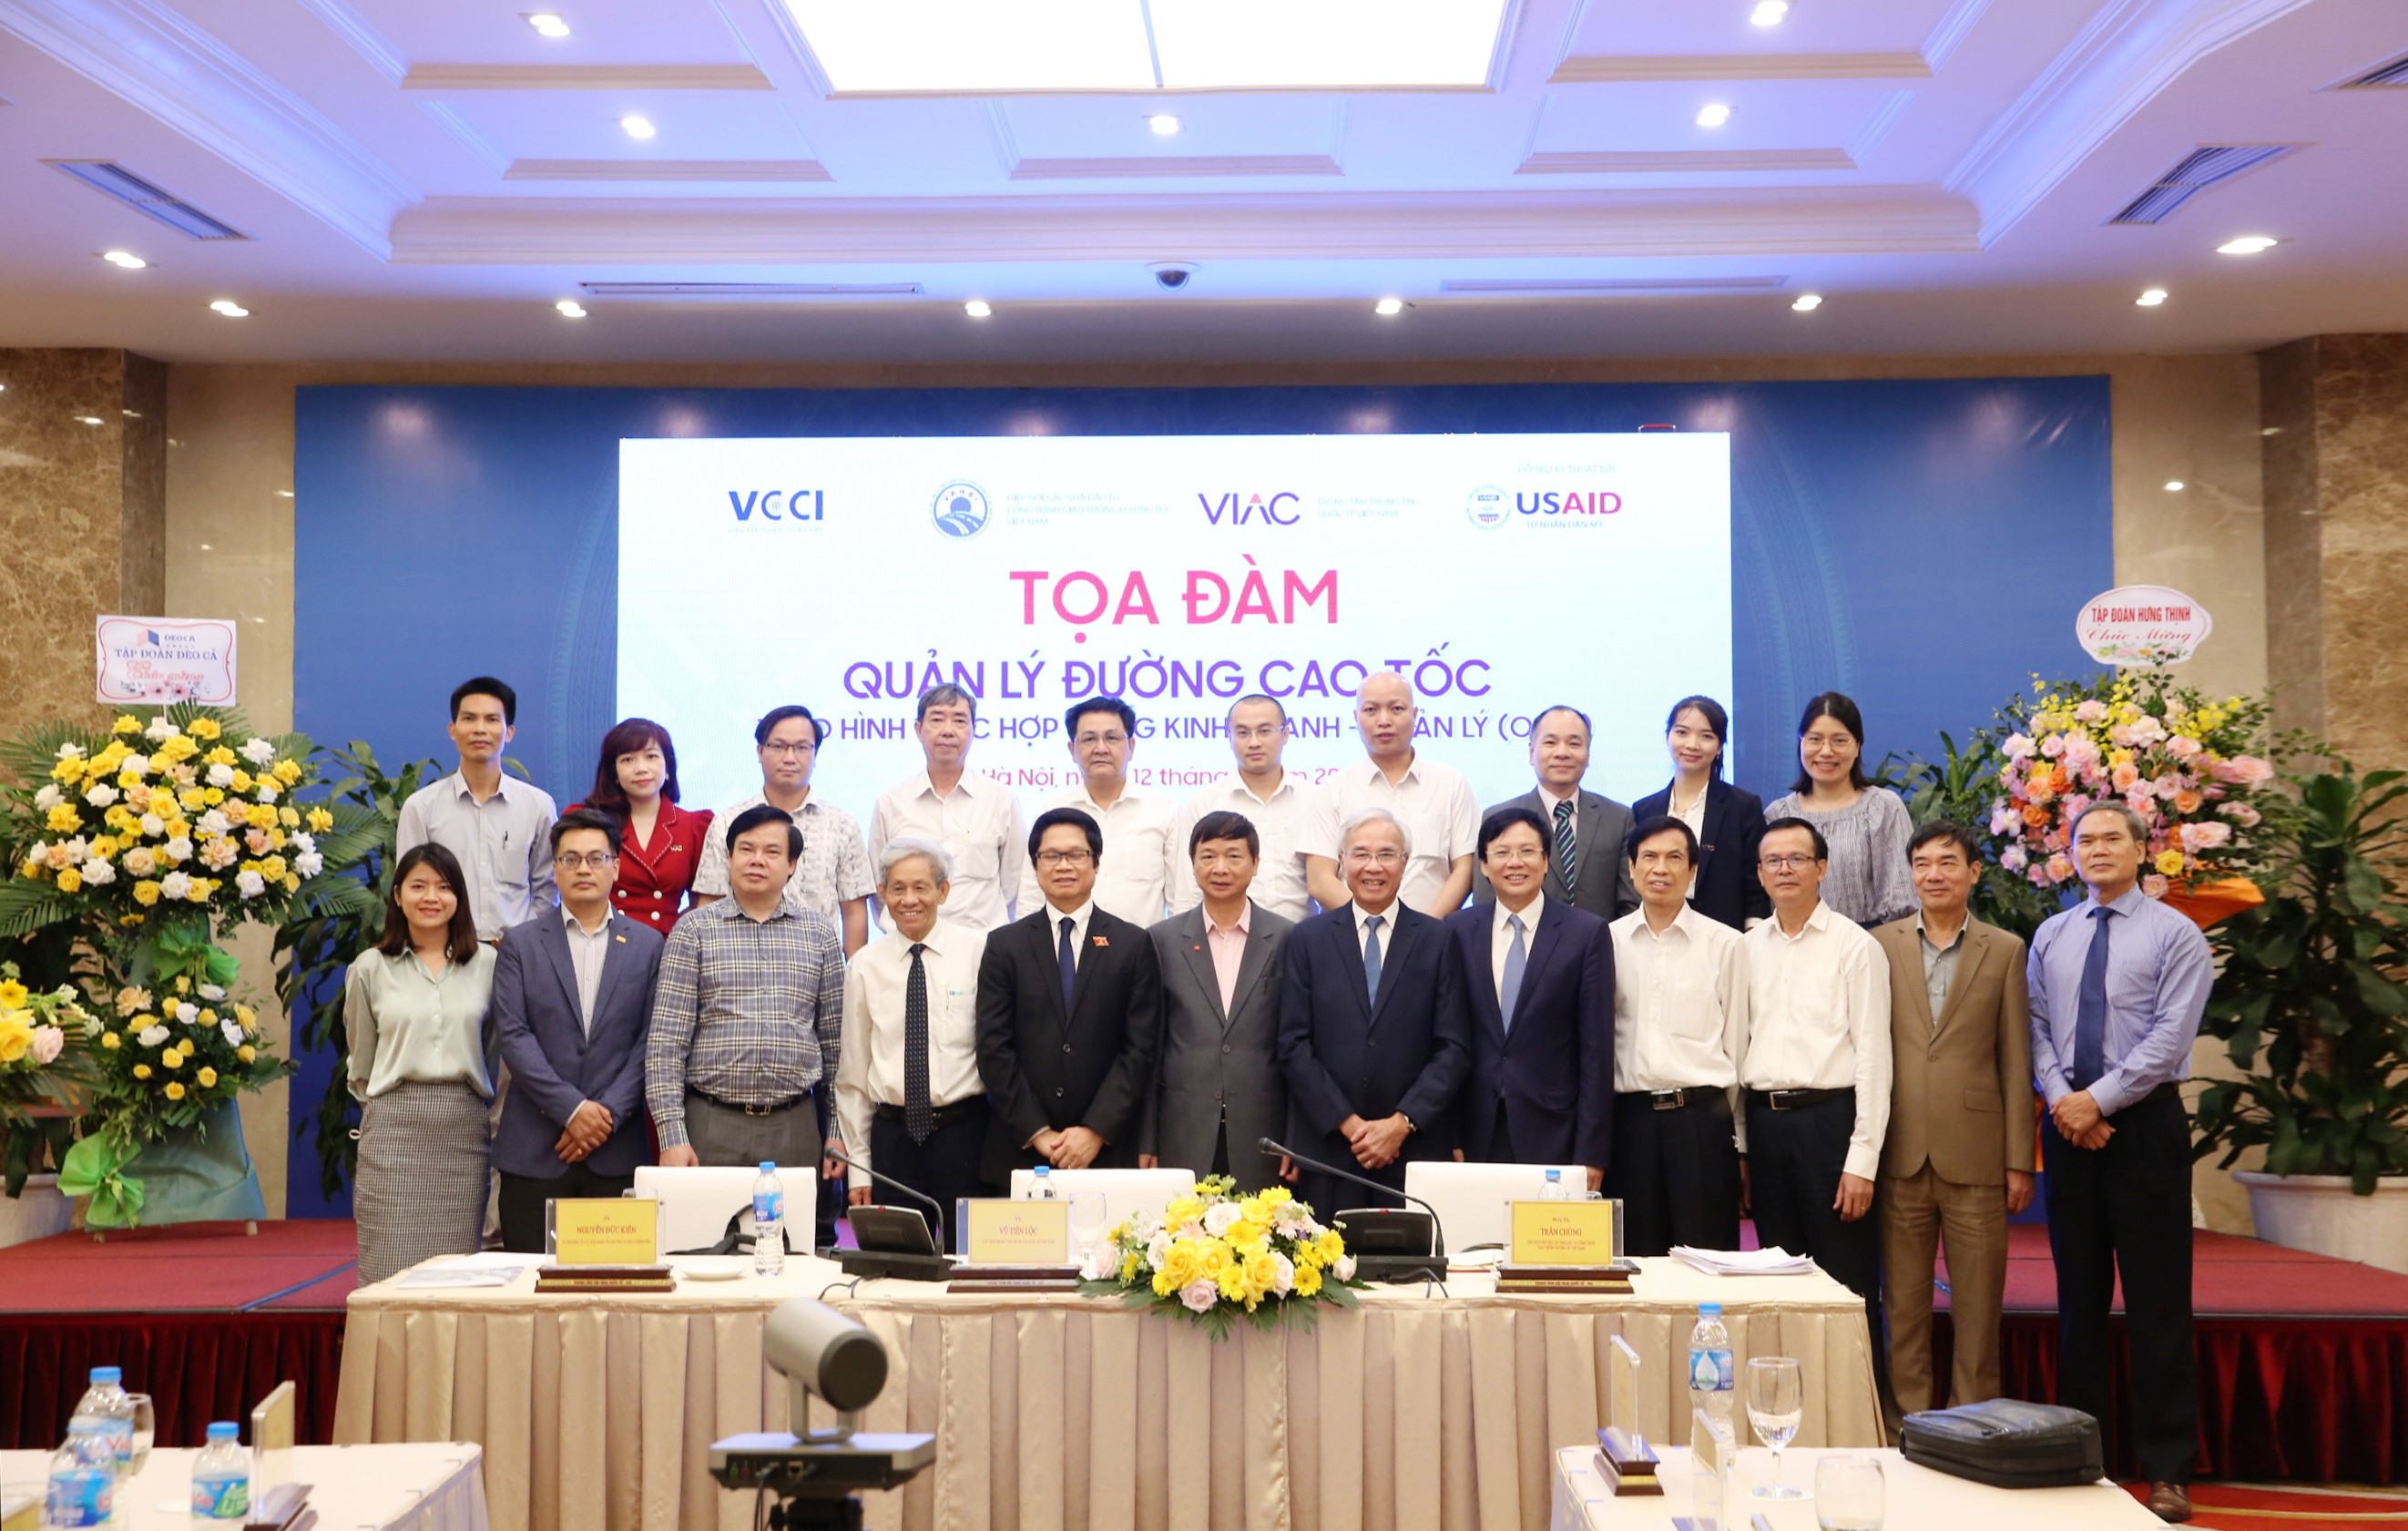 TS. LS Lê Đình Vinh tham gia Diễn đàn Quản lý đường cao tốc theo hình thức O&M do VIAC, VCCI, VARSI và USAID tổ chức